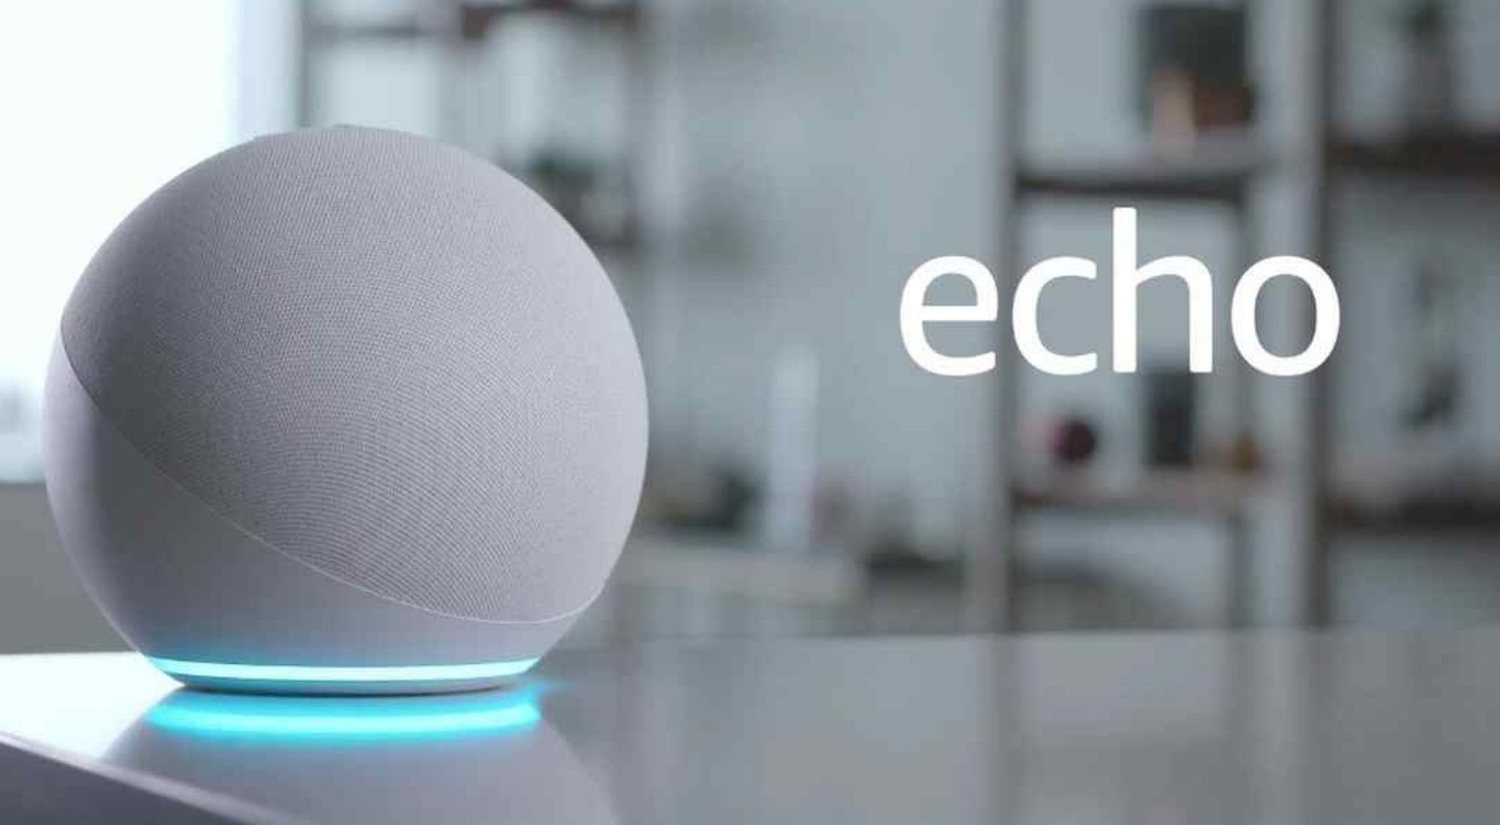 Amazon Echo, Luna, Ring... todas las novedades de la compañía